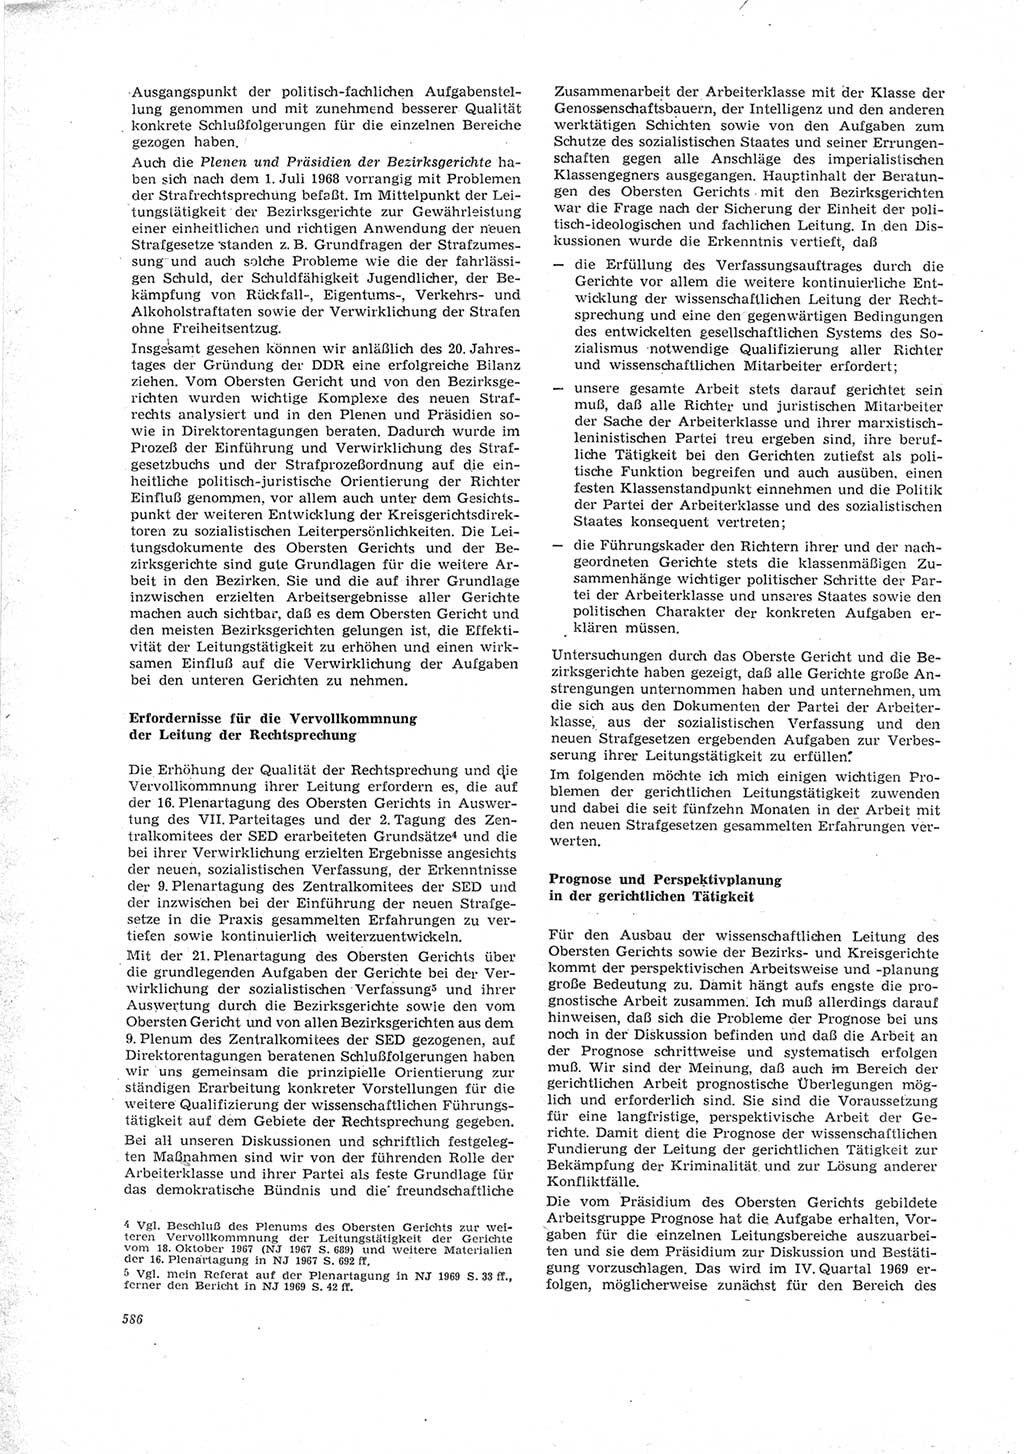 Neue Justiz (NJ), Zeitschrift für Recht und Rechtswissenschaft [Deutsche Demokratische Republik (DDR)], 23. Jahrgang 1969, Seite 586 (NJ DDR 1969, S. 586)